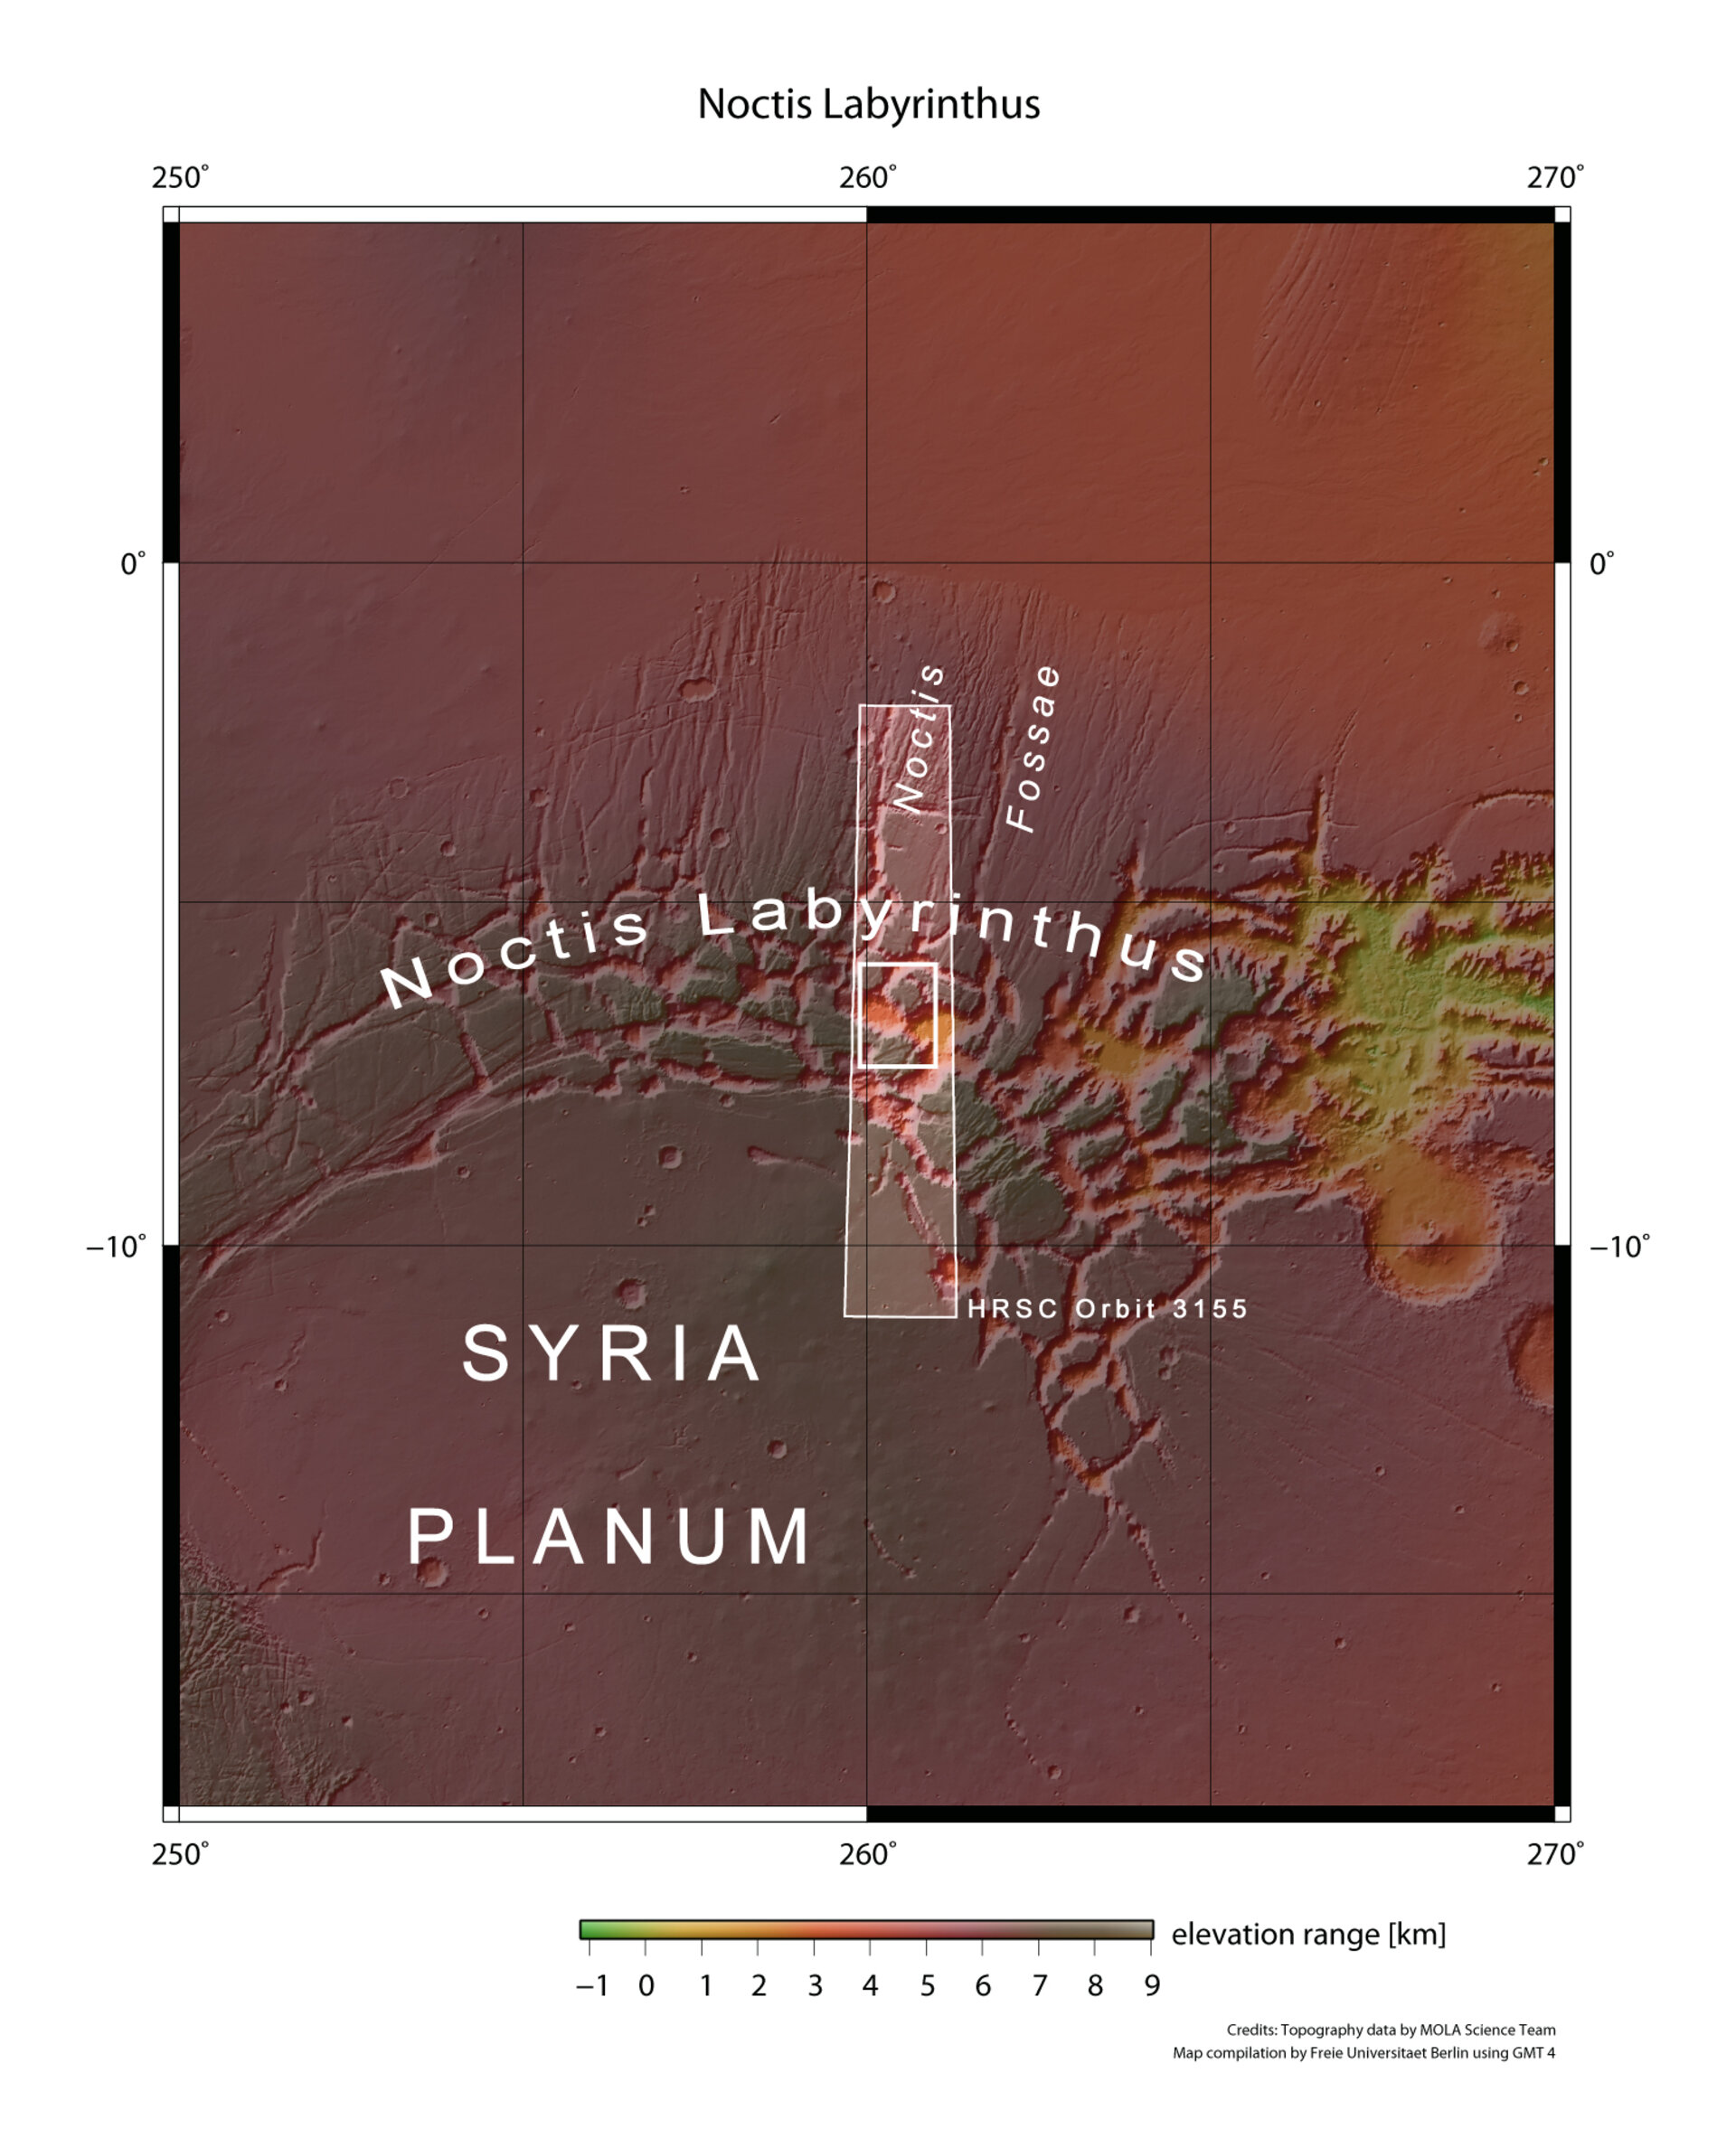 Noctis Labyrinthus context map